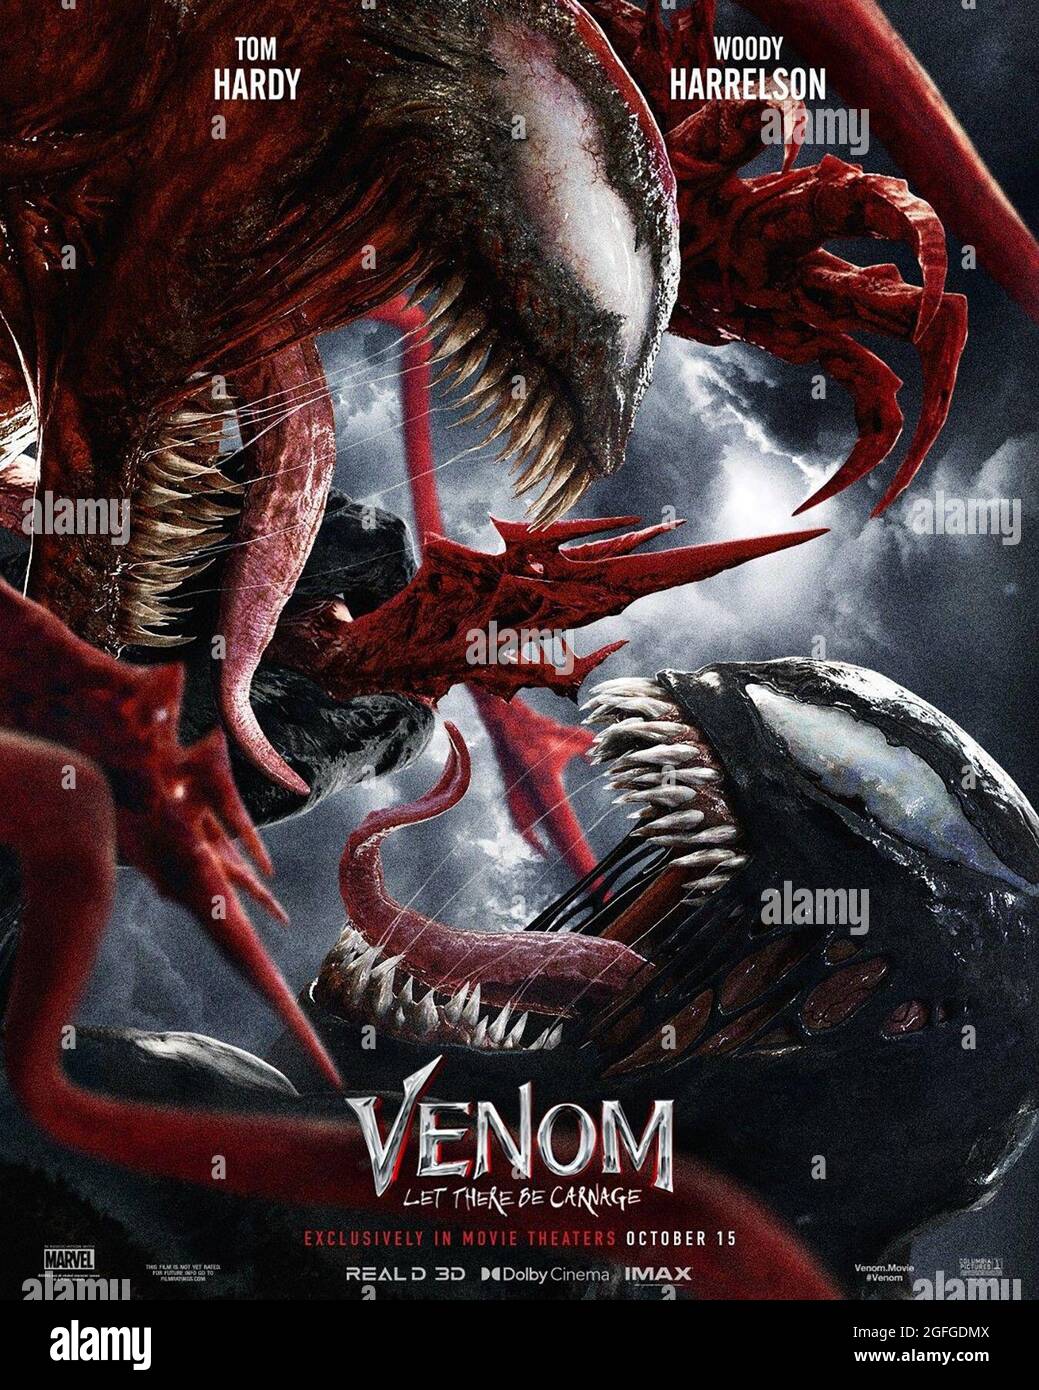 Be download film there venom carnage let Venom: Let